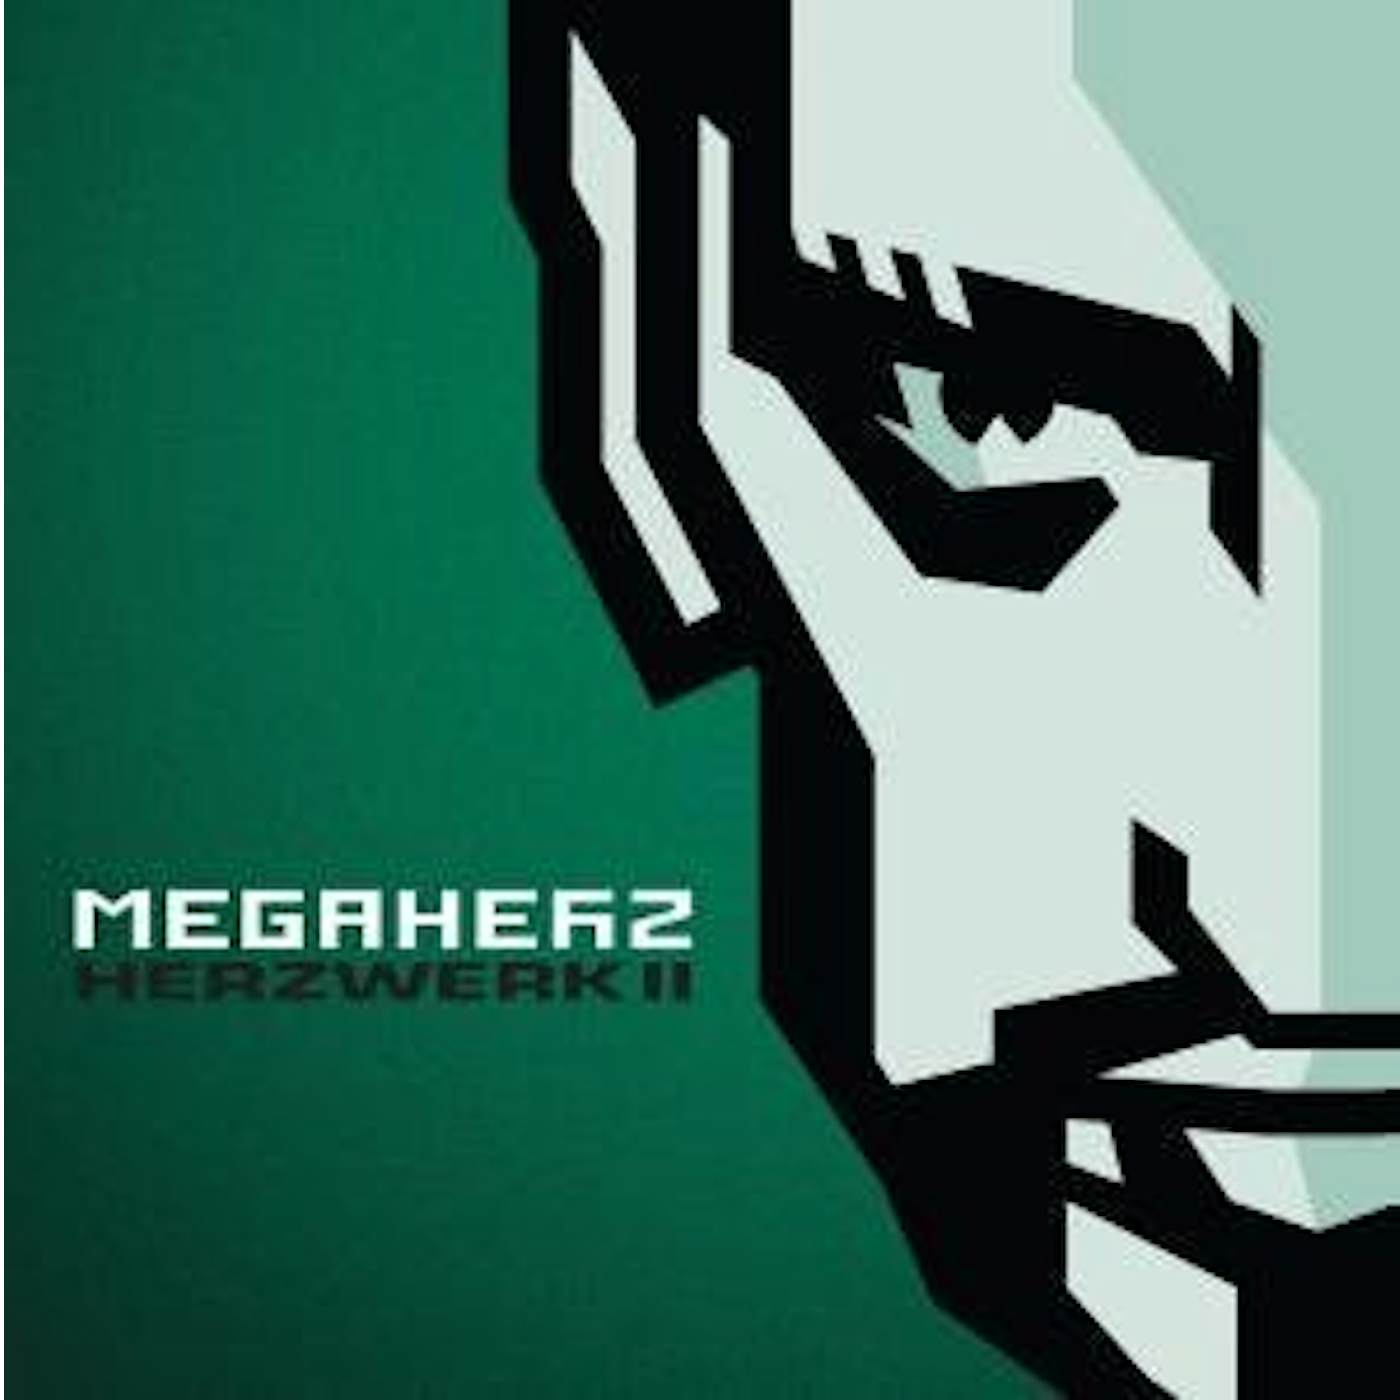 Megaherz HERZWERK II CD